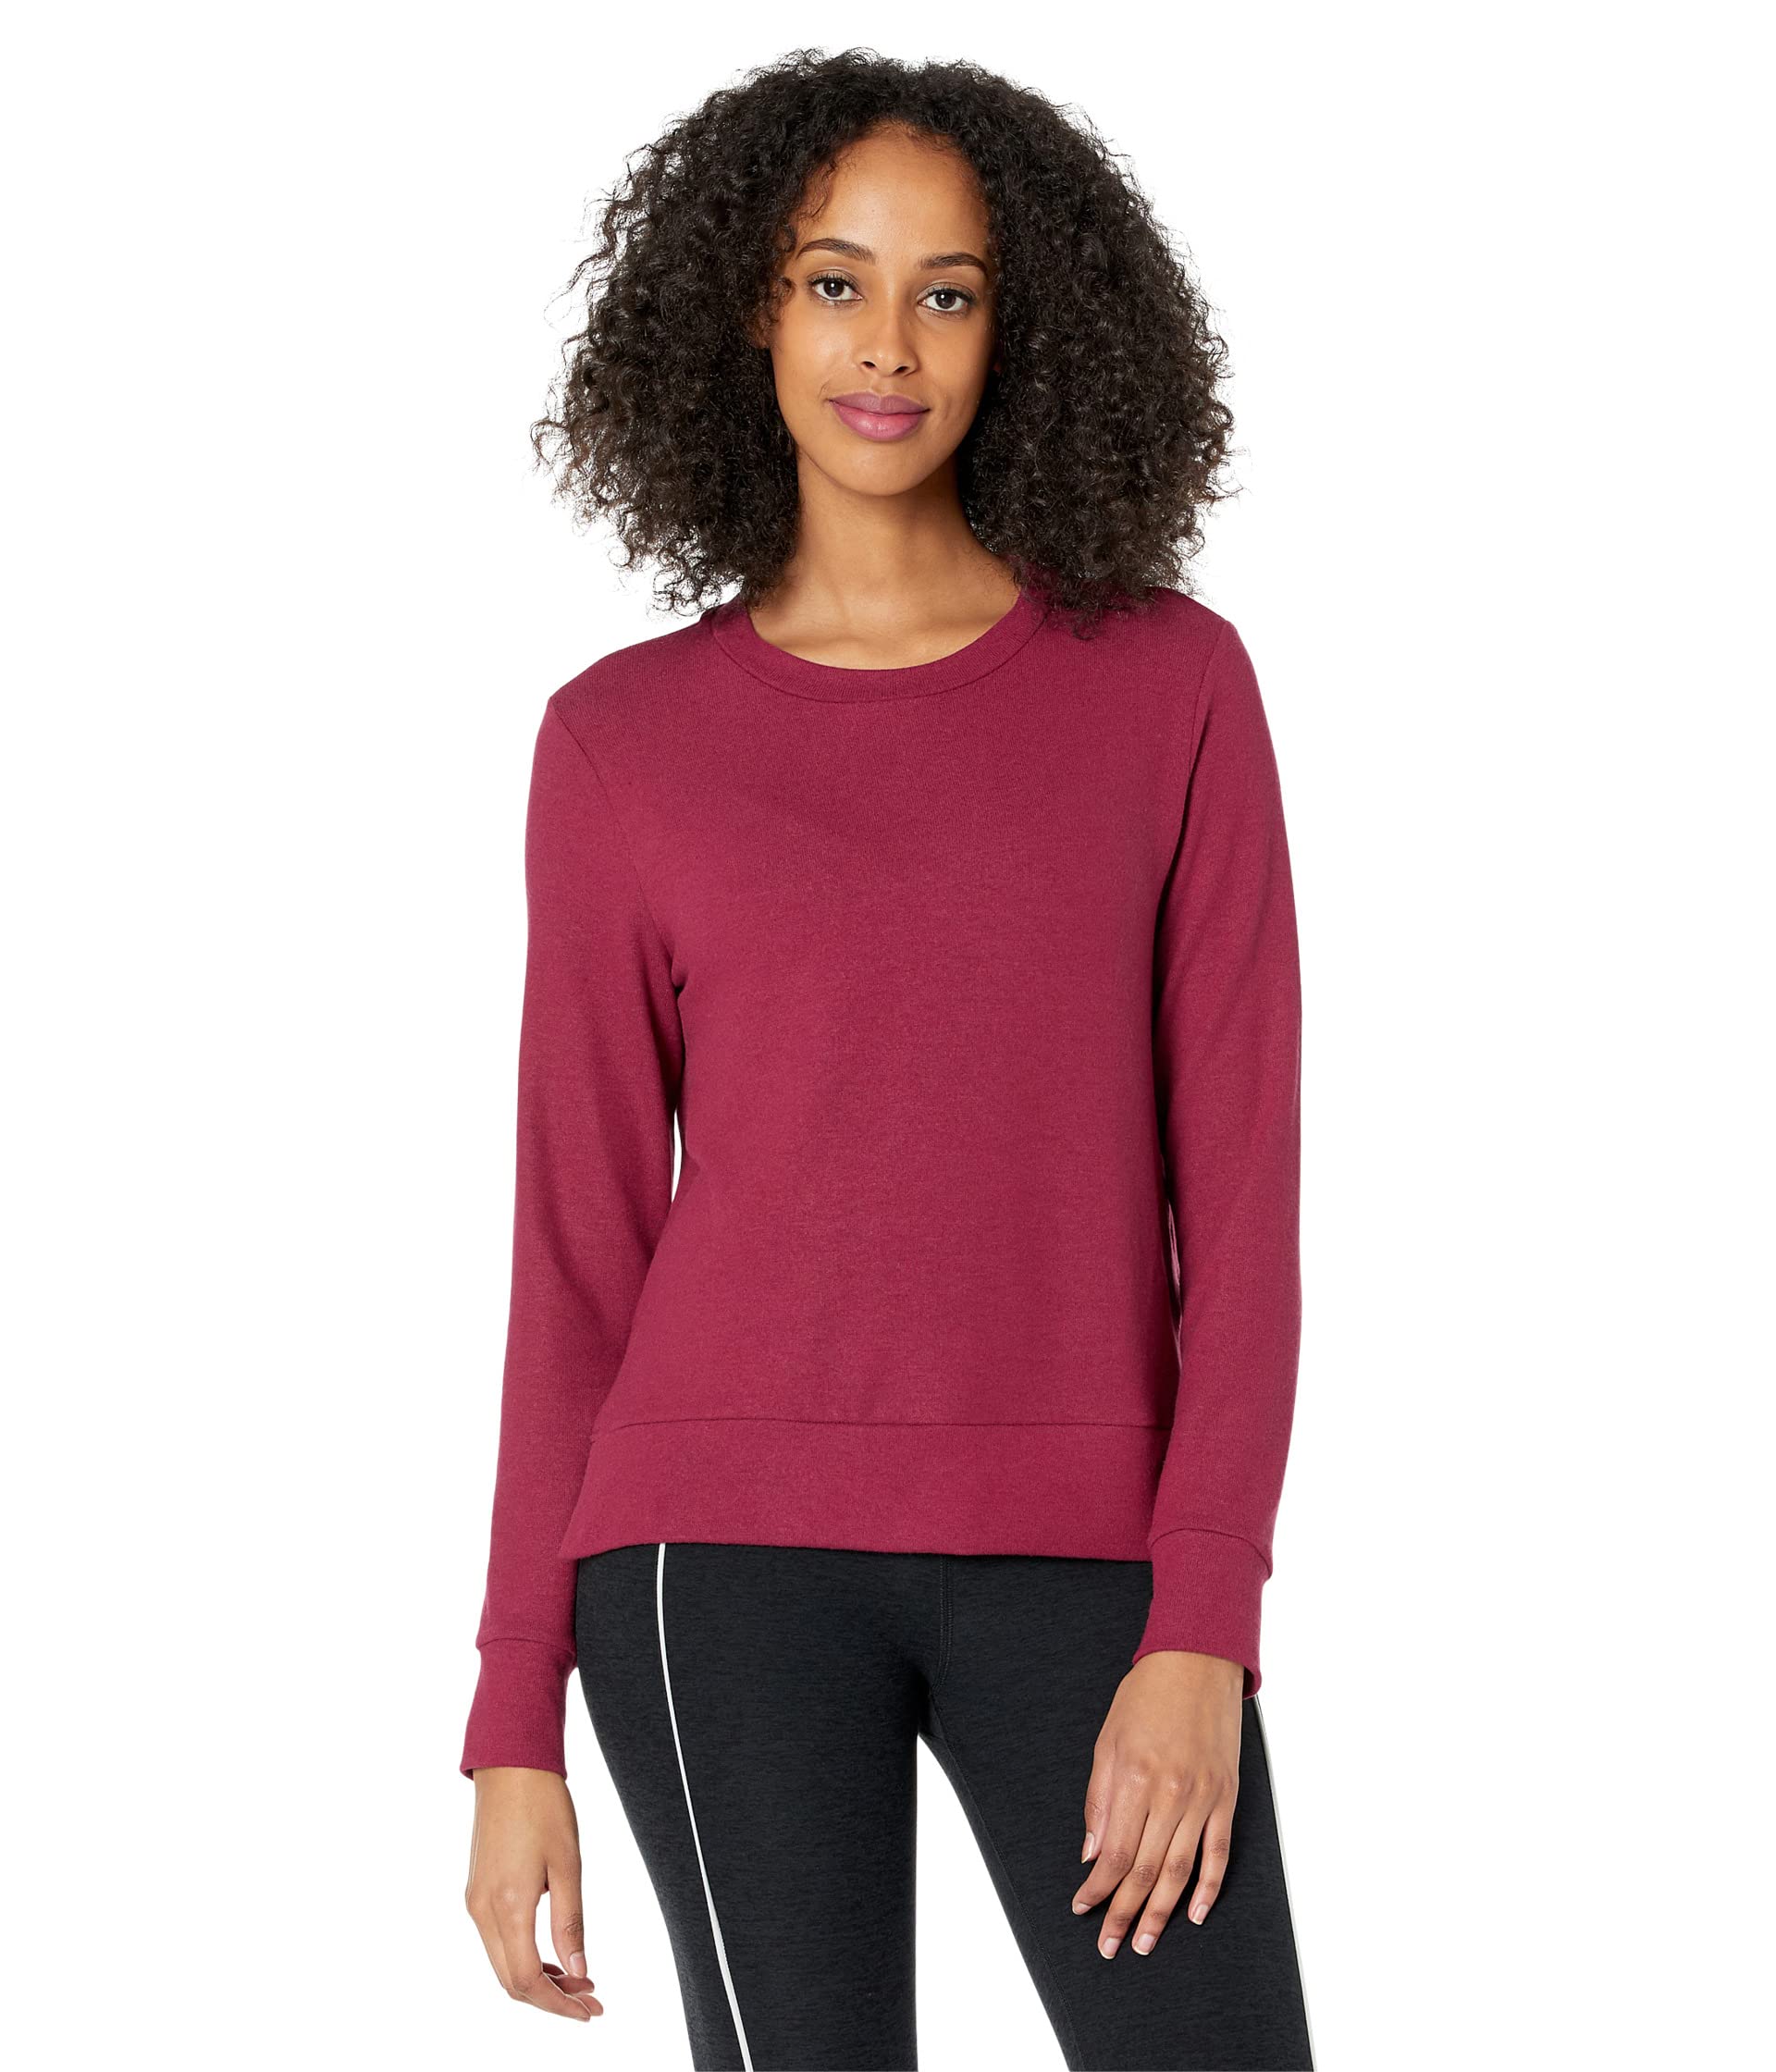 Пуловер Beyond Yoga, Side Slit Long Sleeve Pullover пуловер beyond yoga plus size favorite raglan crew pullover цвет garnet red